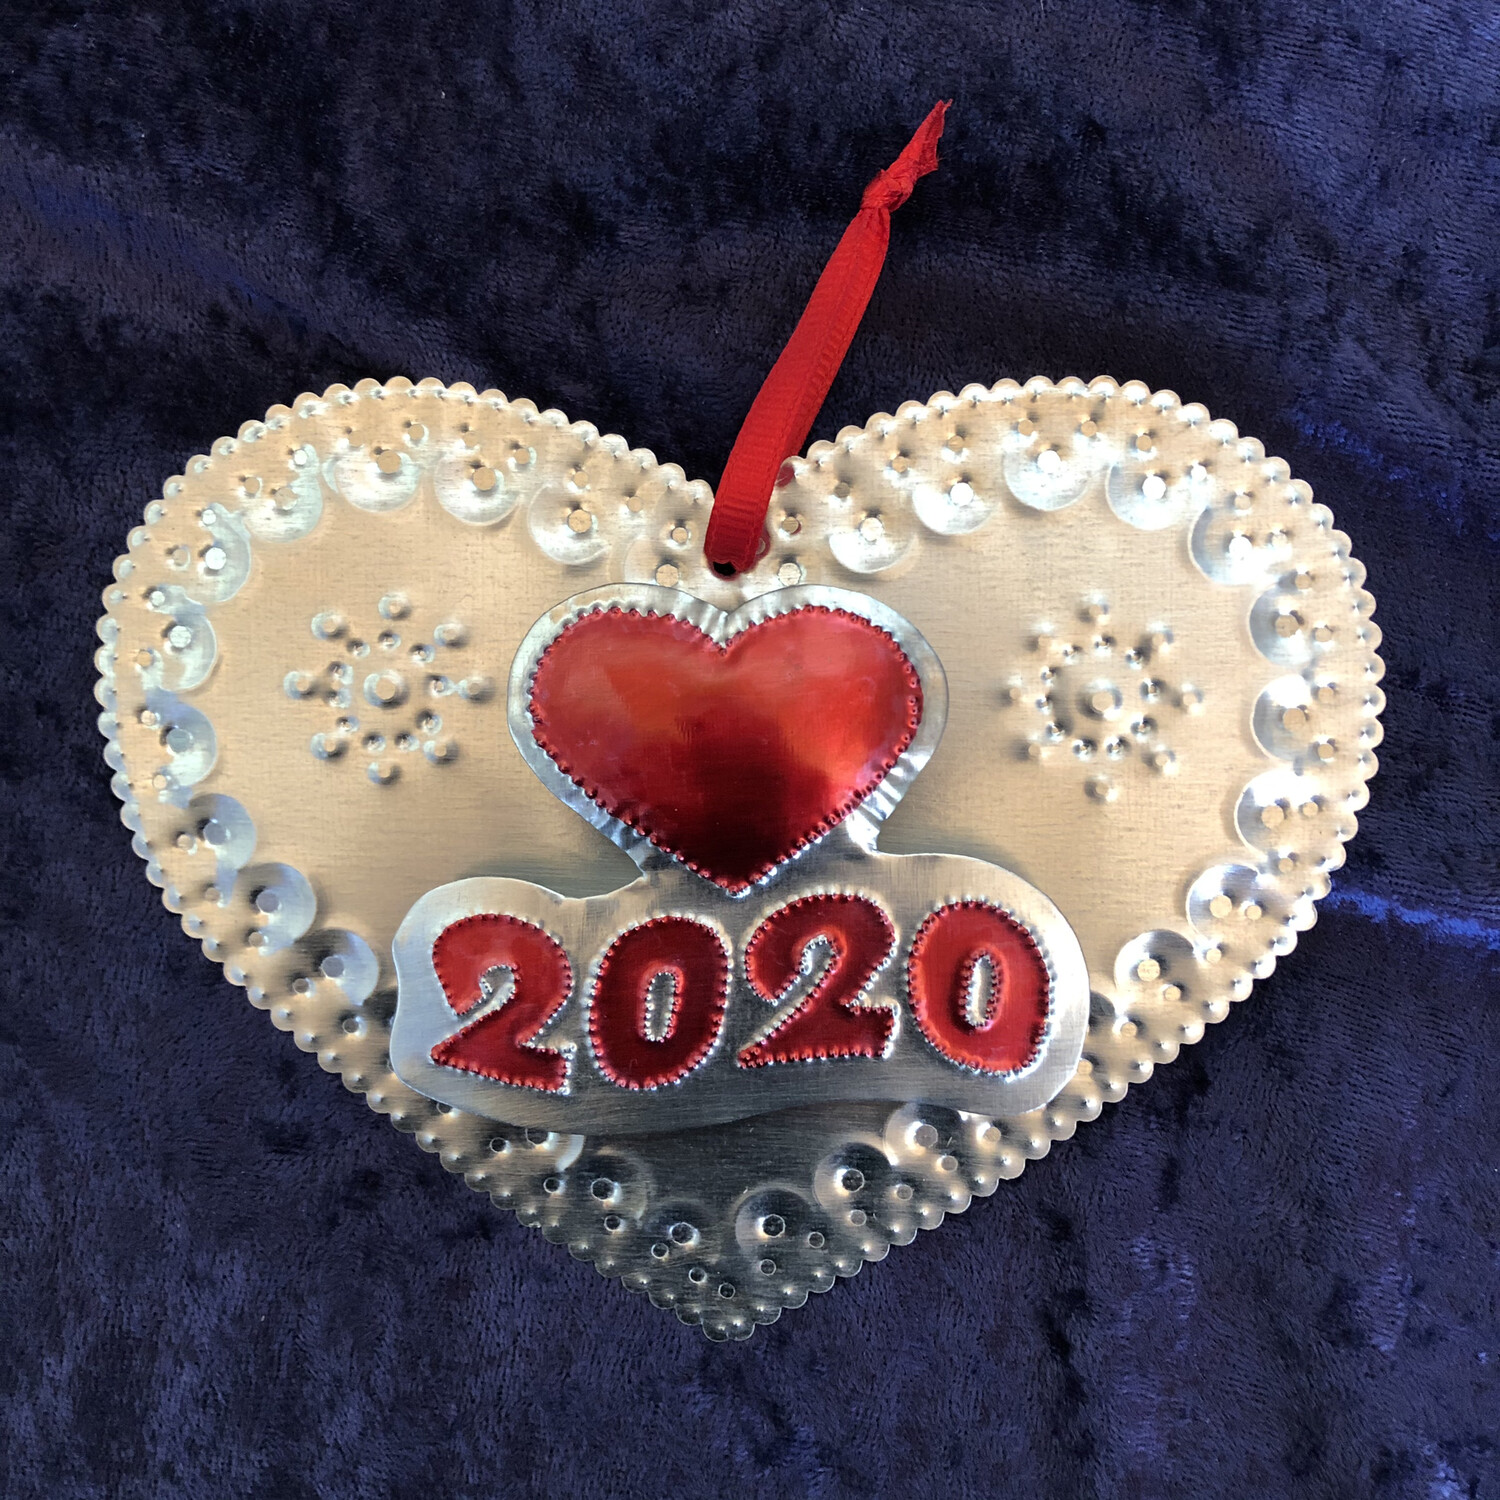 2 Dimension 2020 Heart Ornament 